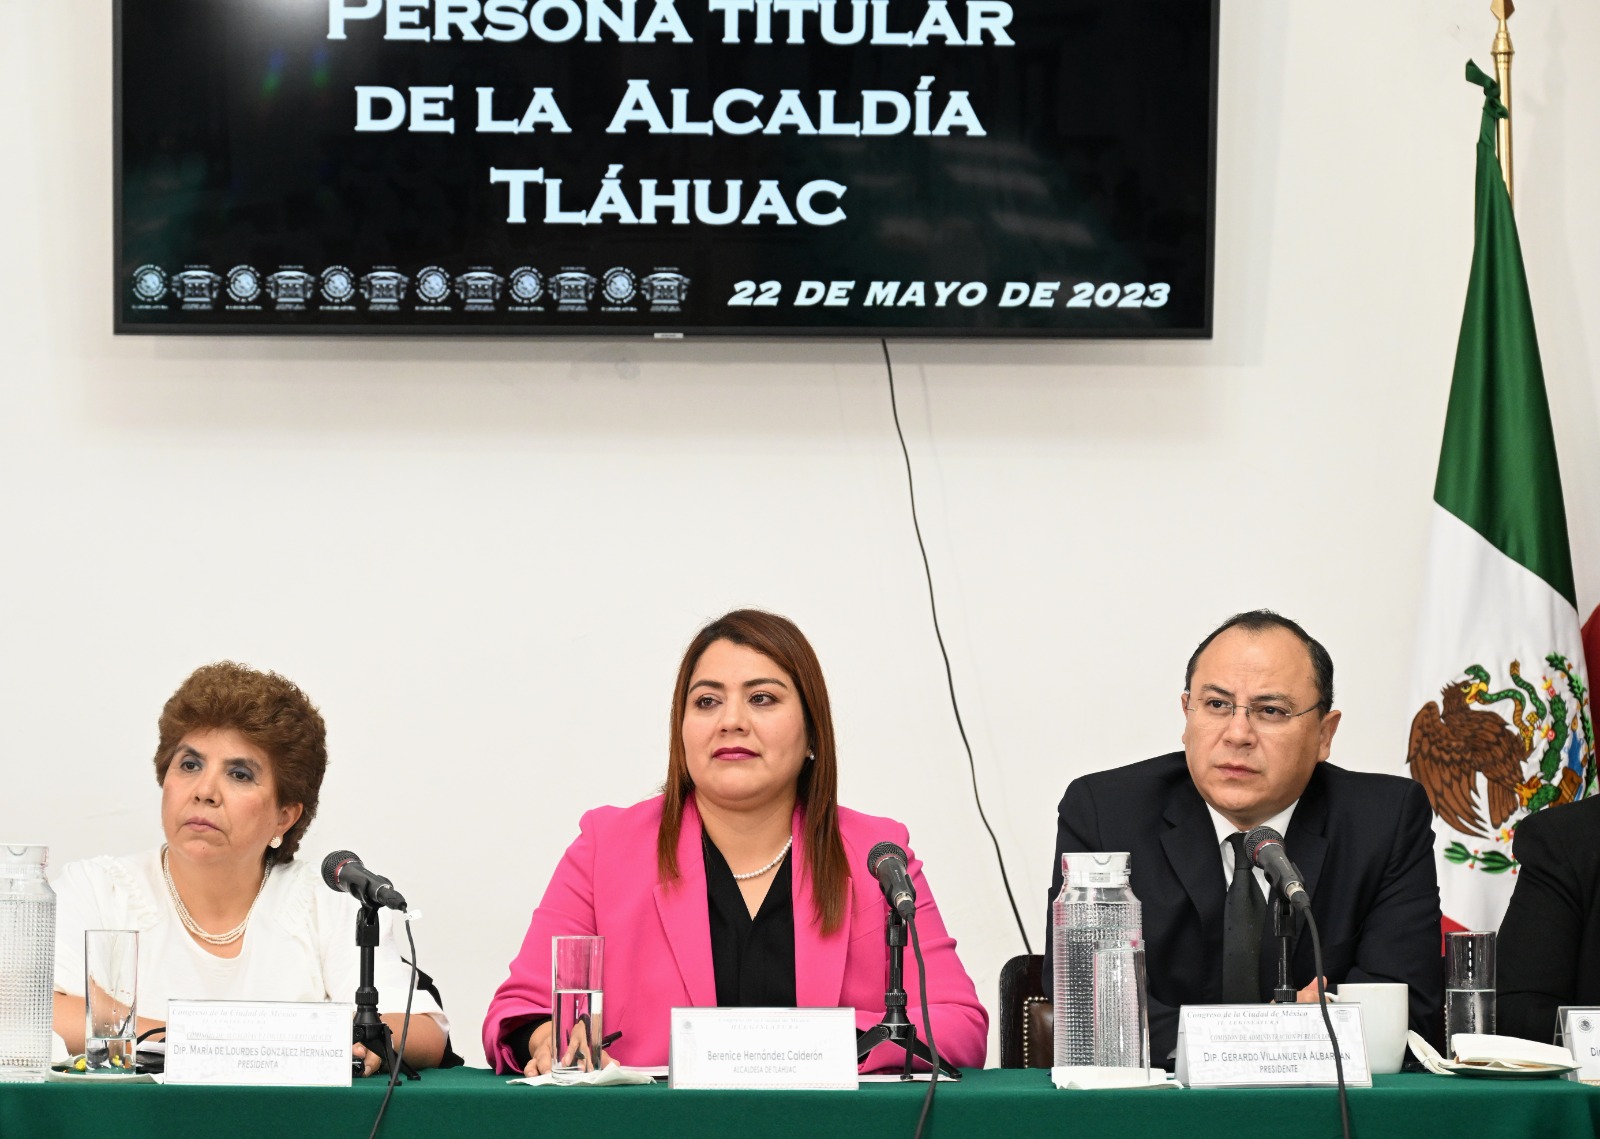 Presenta alcaldesa de Tláhuac, Berenice Hernandez, resultados y acciones impulsadas por su gobierno